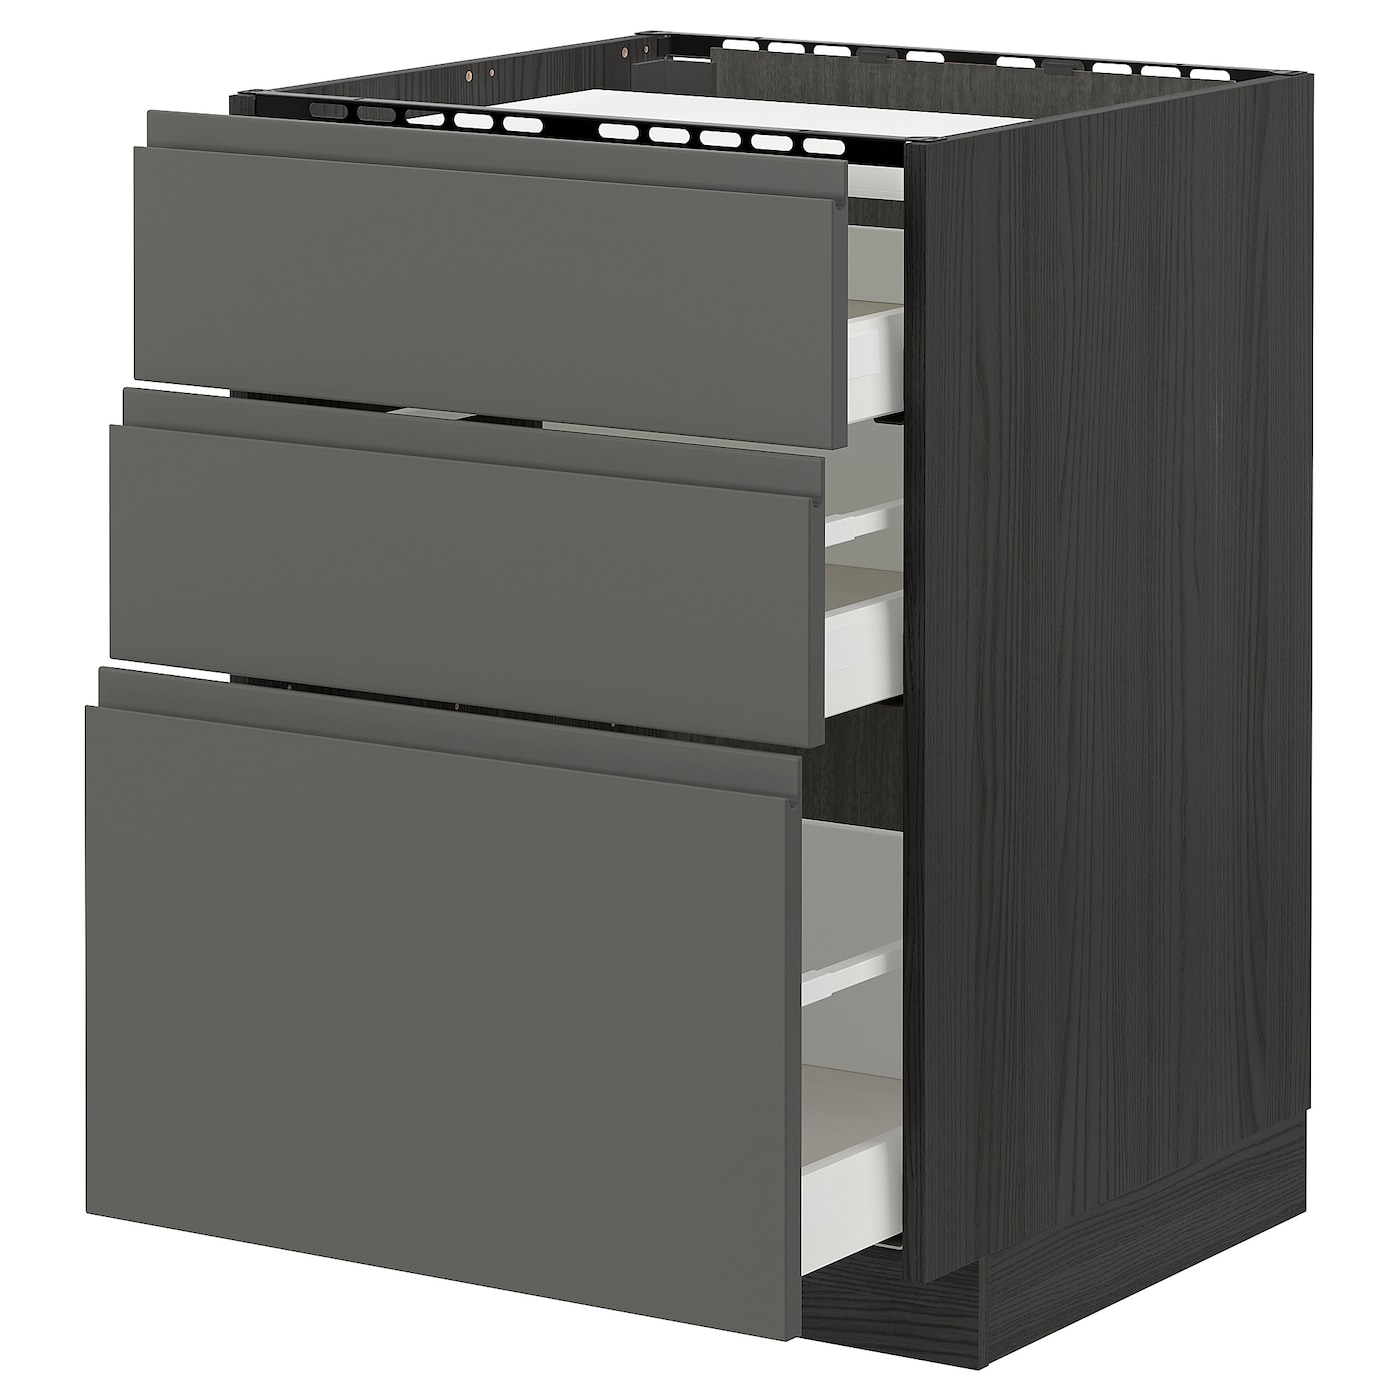 Напольный шкаф  - IKEA METOD MAXIMERA, 88x62,1x60см, черный/серый, МЕТОД МАКСИМЕРА ИКЕА